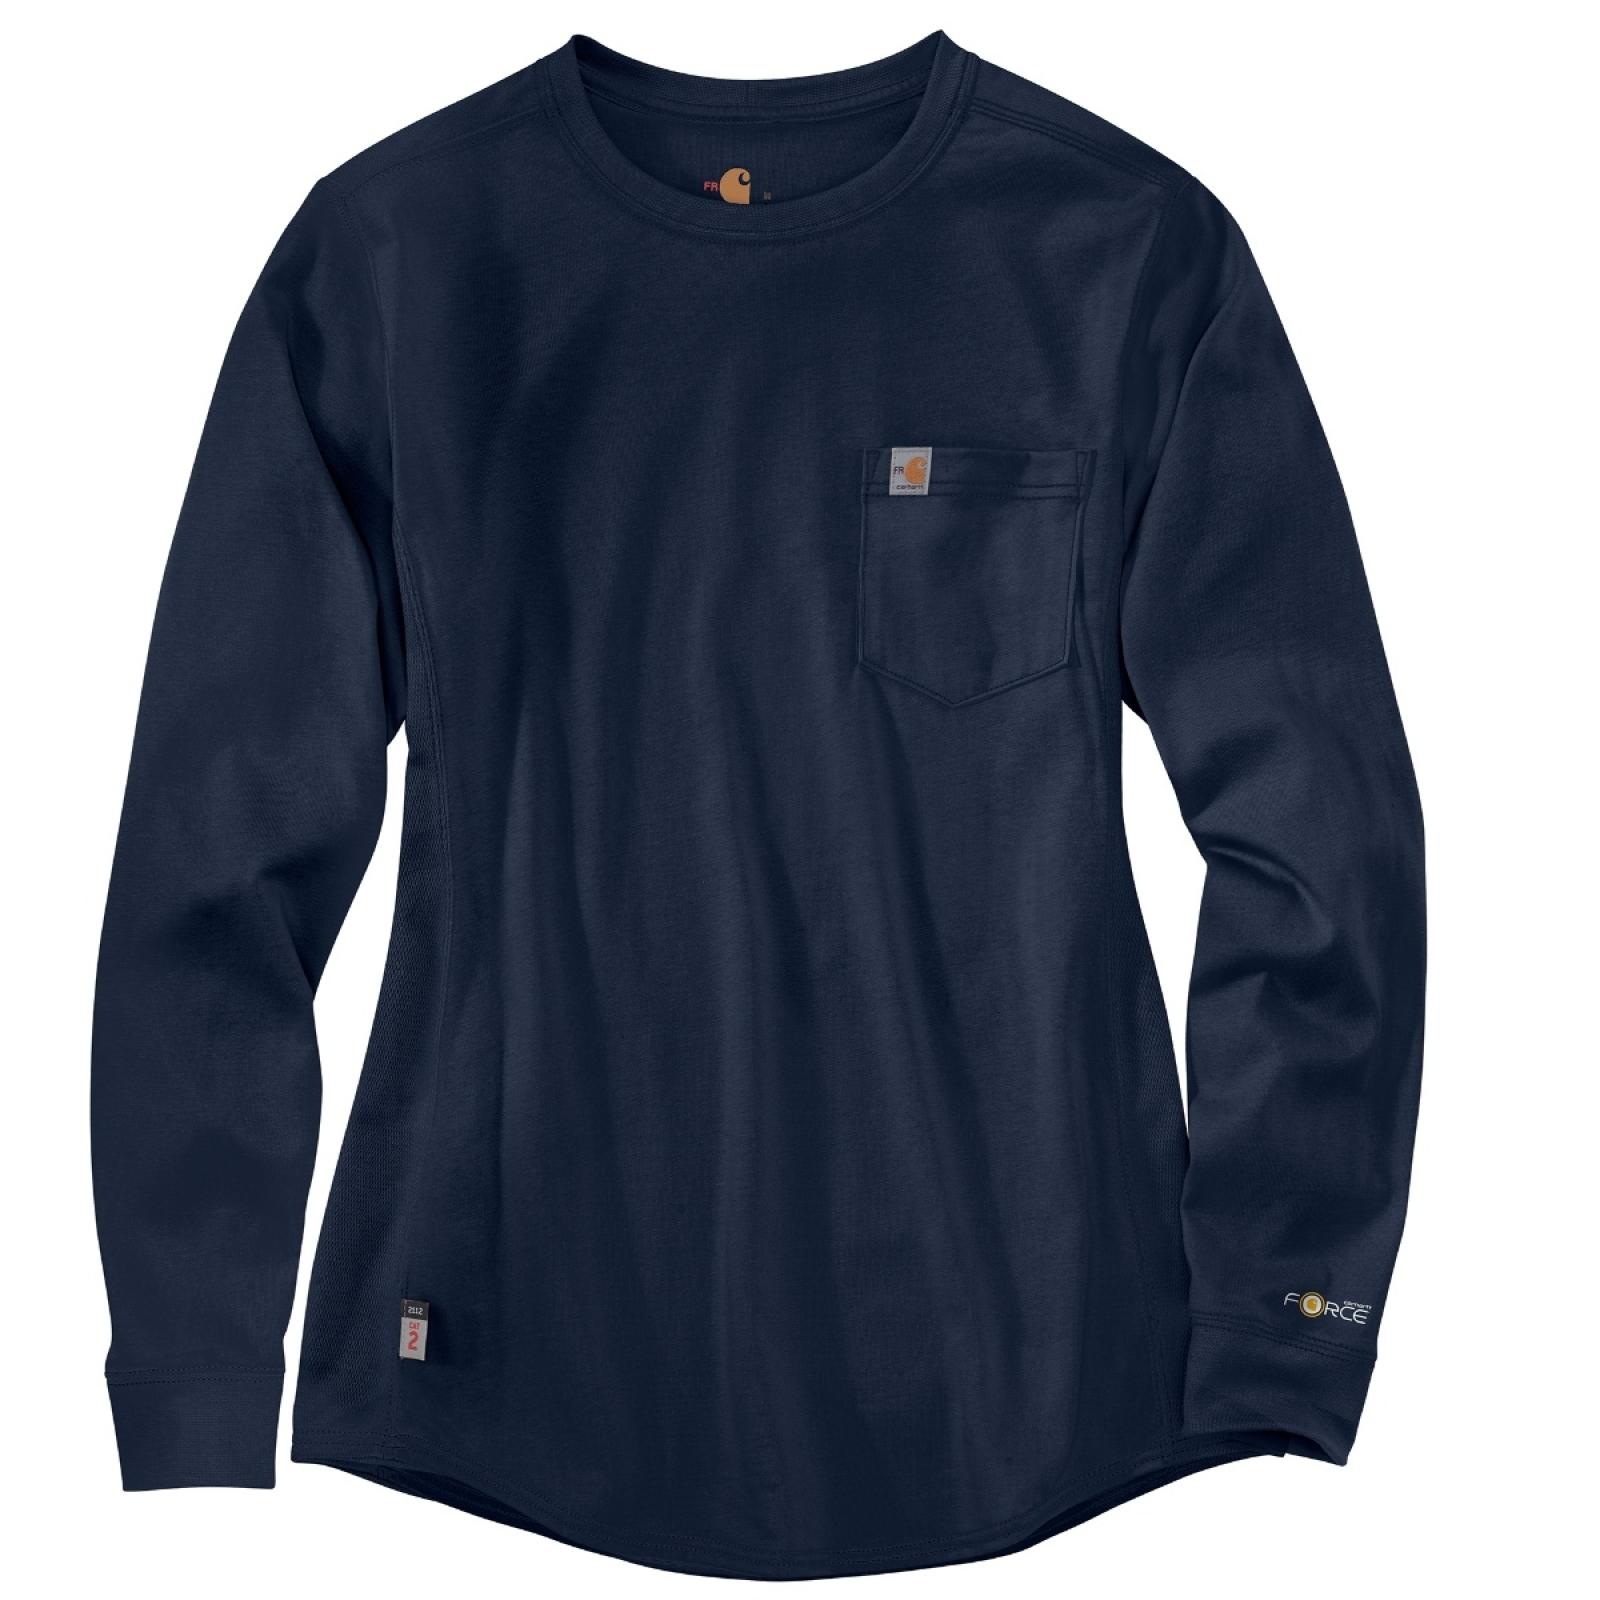 Carhartt Women's FR Force Cotton Long-Sleeve Crewneck T-Shirt